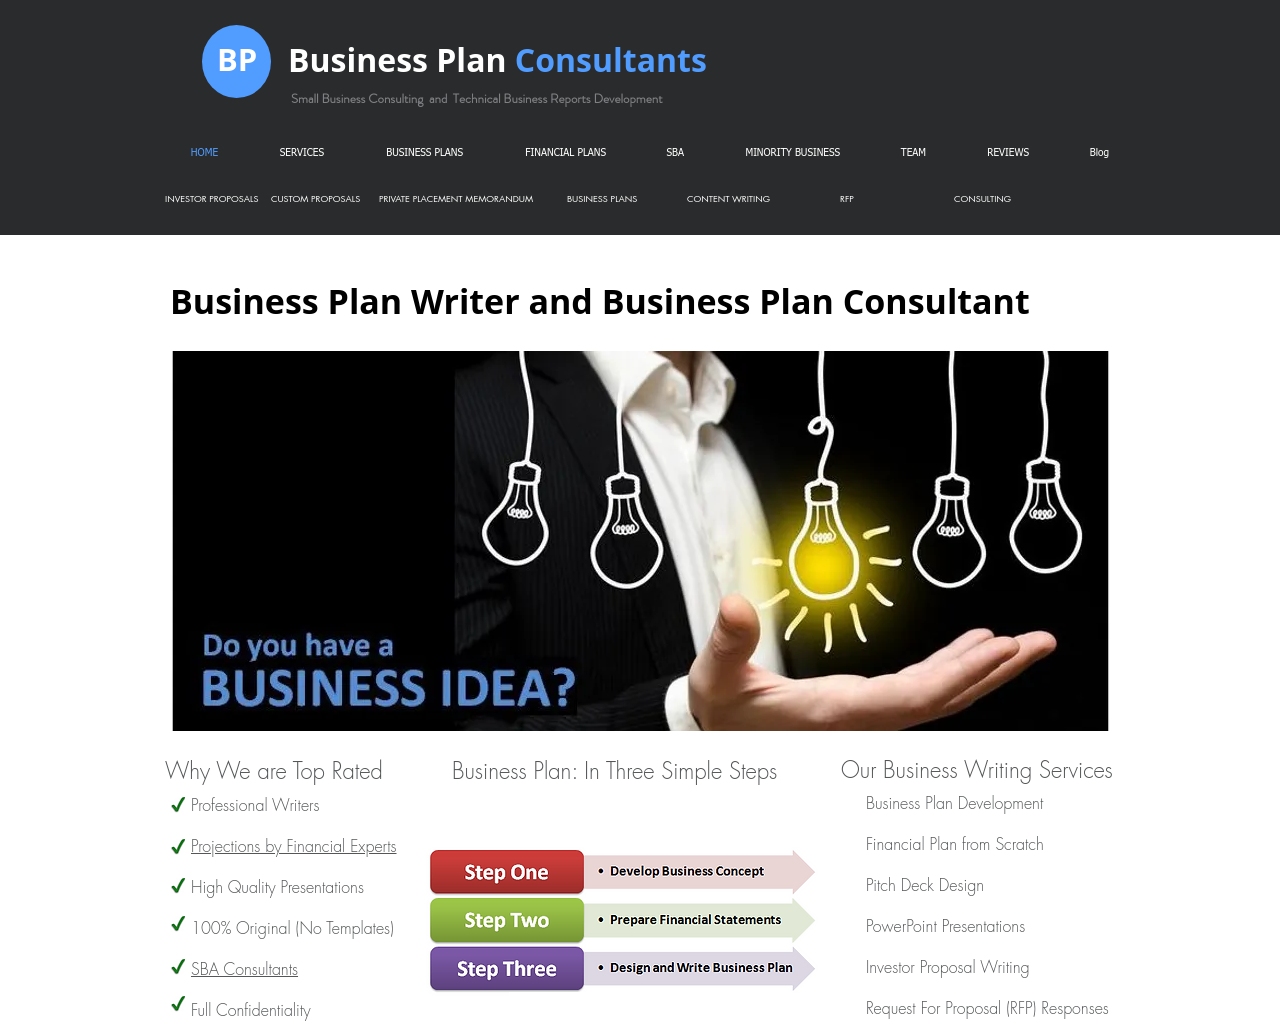 preparebusinessplan.com